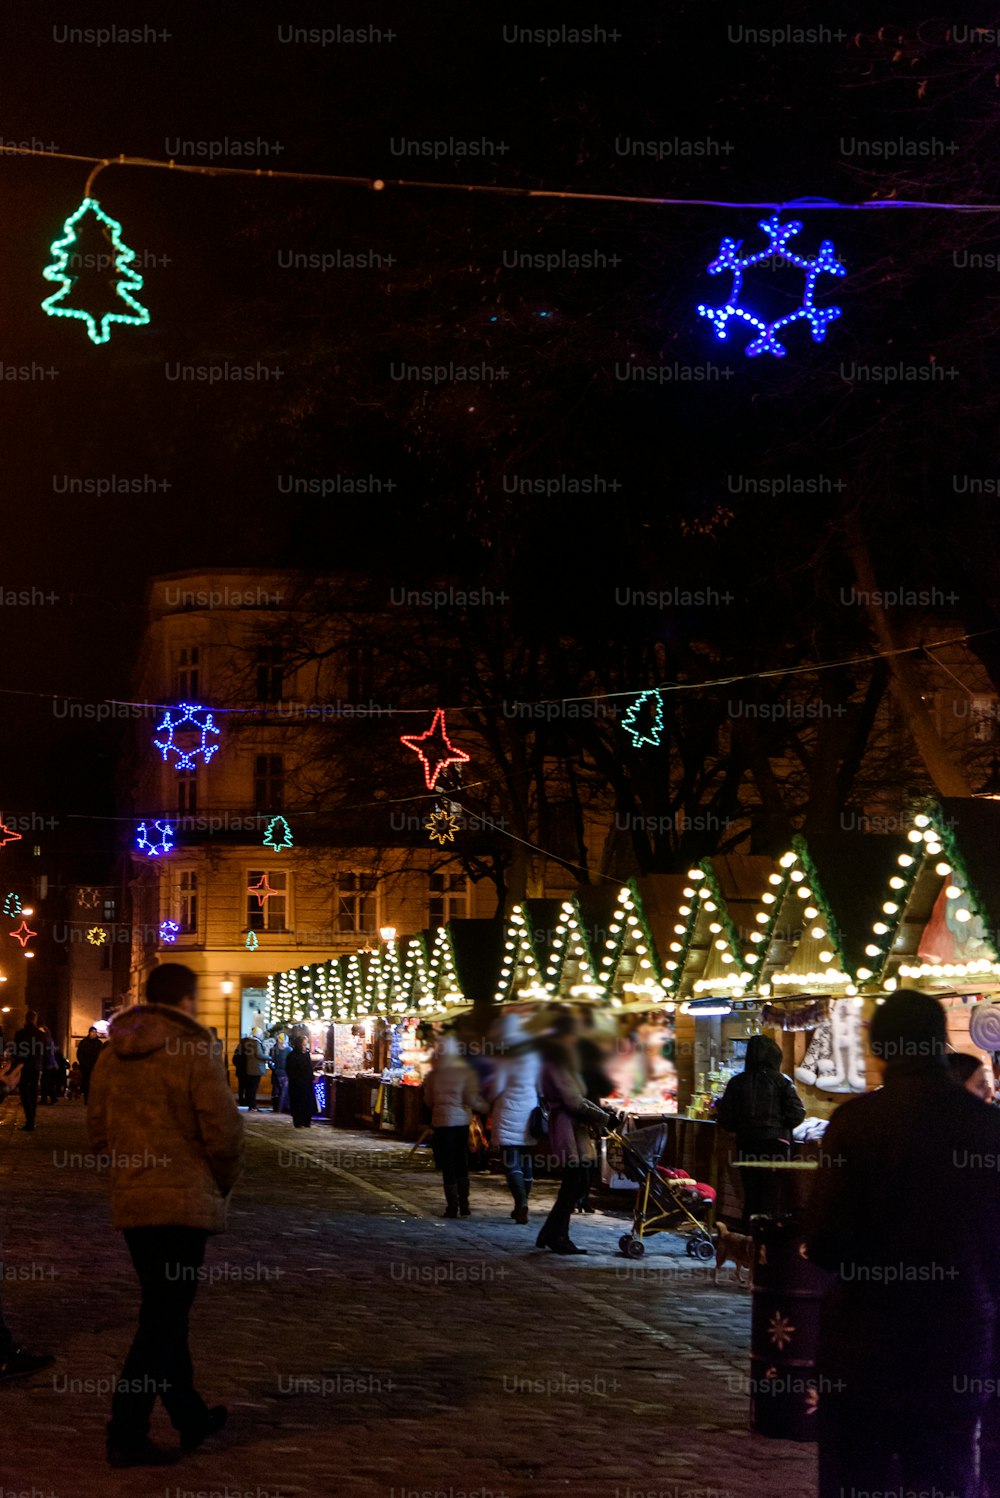 Bellissimo centro città decorato per le vacanze di Natale in inverno con luci la sera